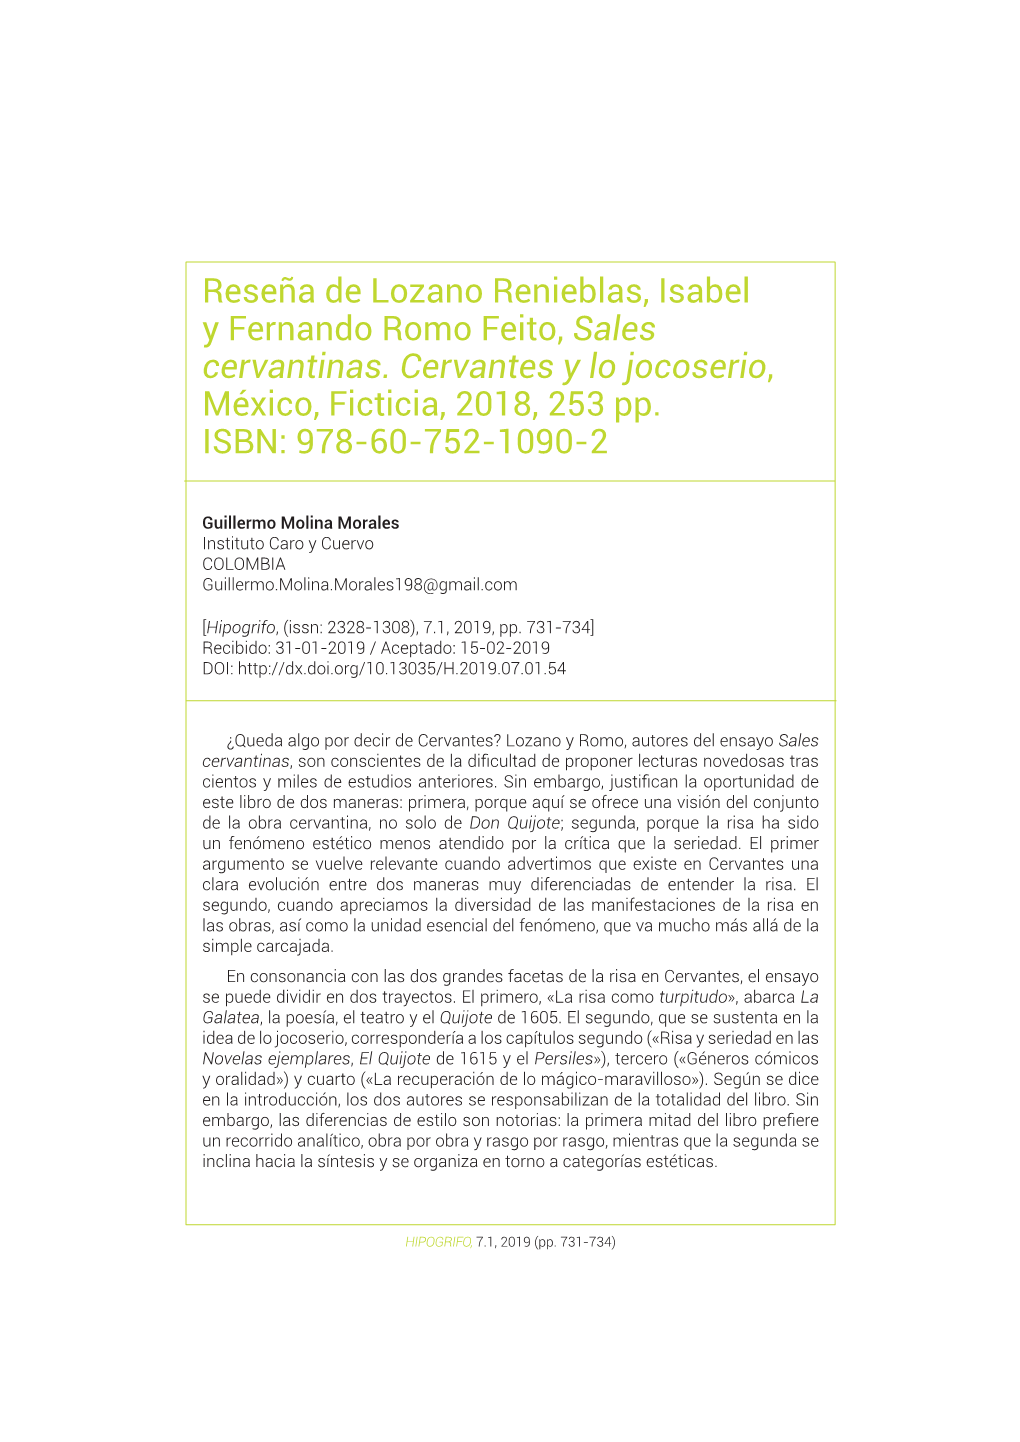 Reseña De Lozano Renieblas, Isabel Y Fernando Romo Feito,«Sales